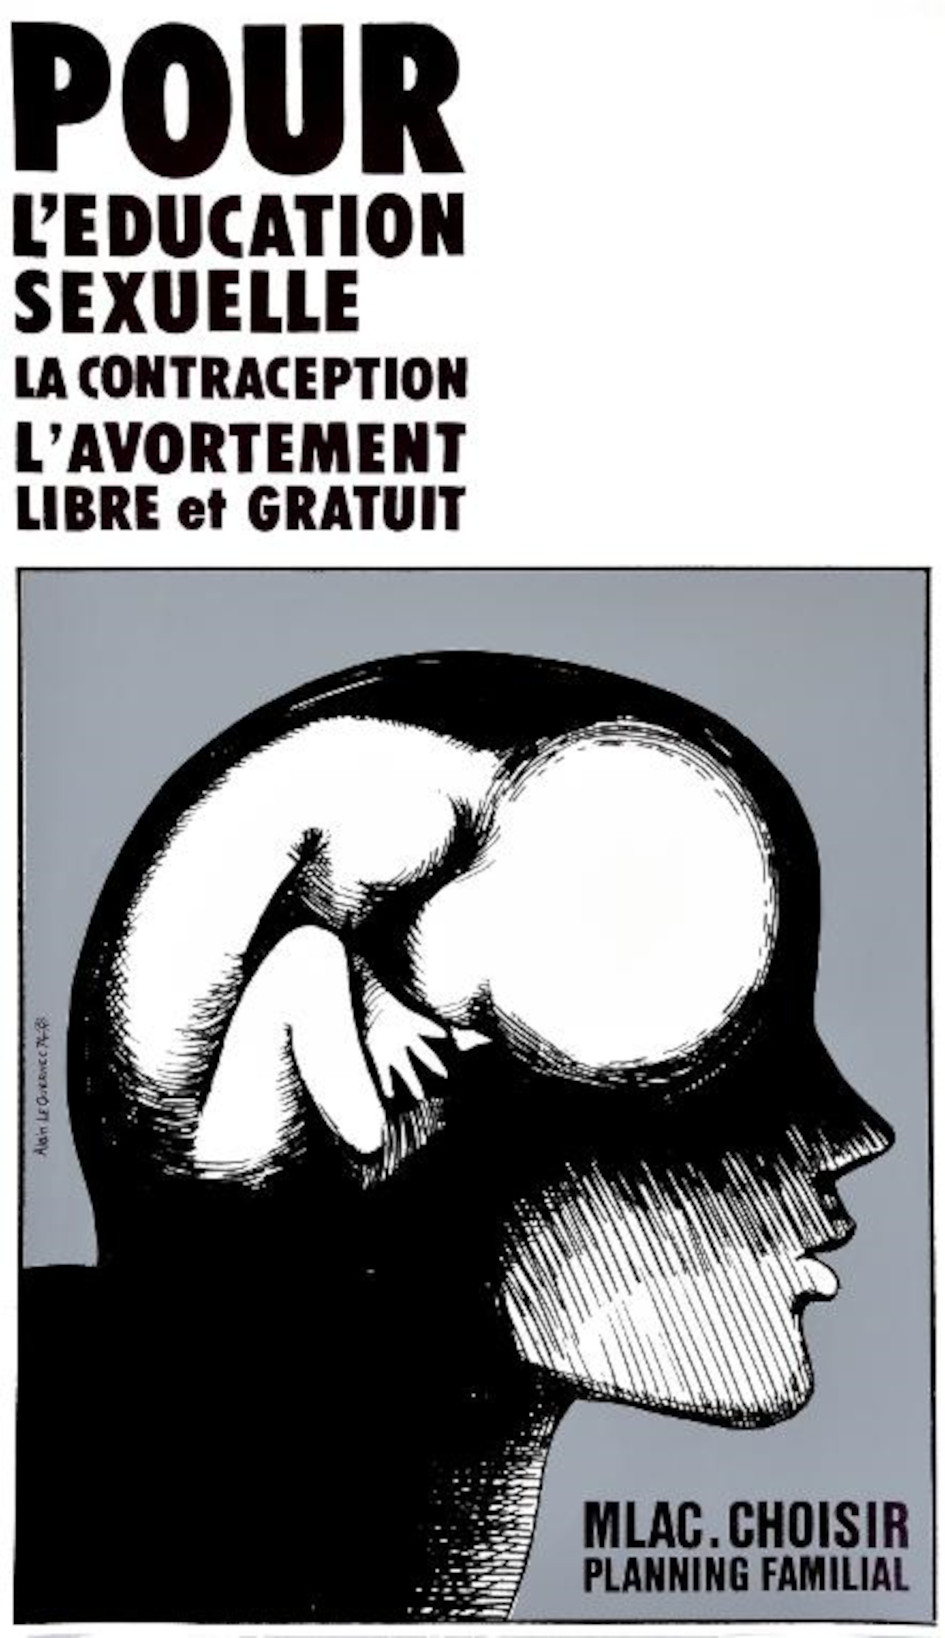 Pour l'éducation sexuelle, affiche d'Alain Le Quernec (1973). Collections Musée de Bretagne, Rennes : 2020.0001.9, ©Tous droits réservés.